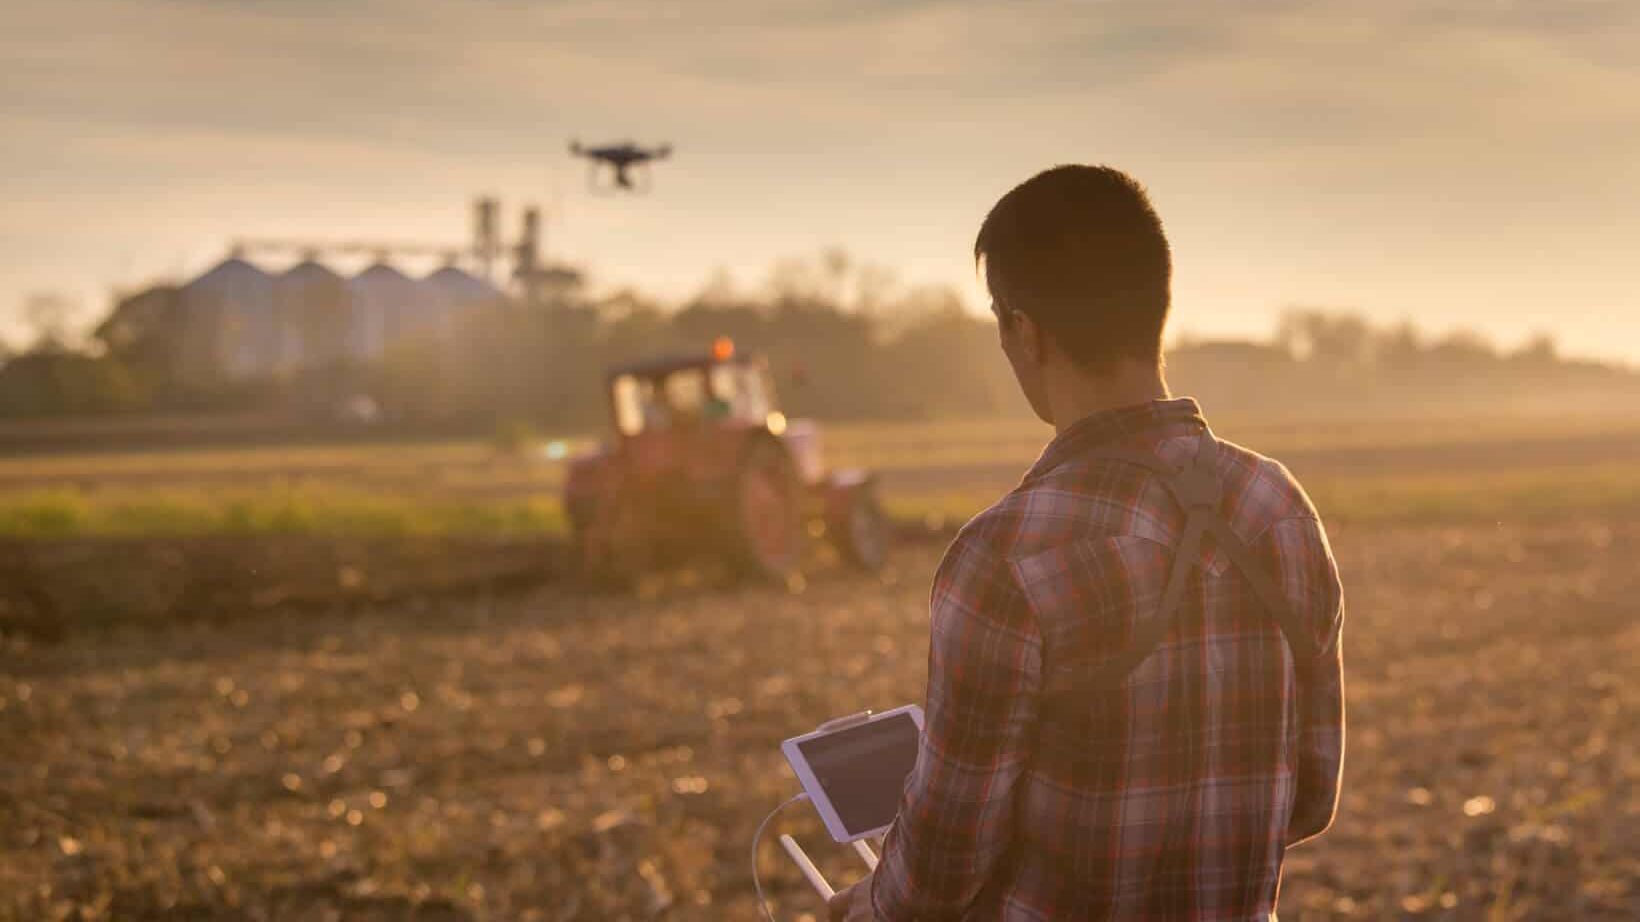 Die Zukunft der Landwirtschaft – wie sieht der Bauernhof von morgen aus?